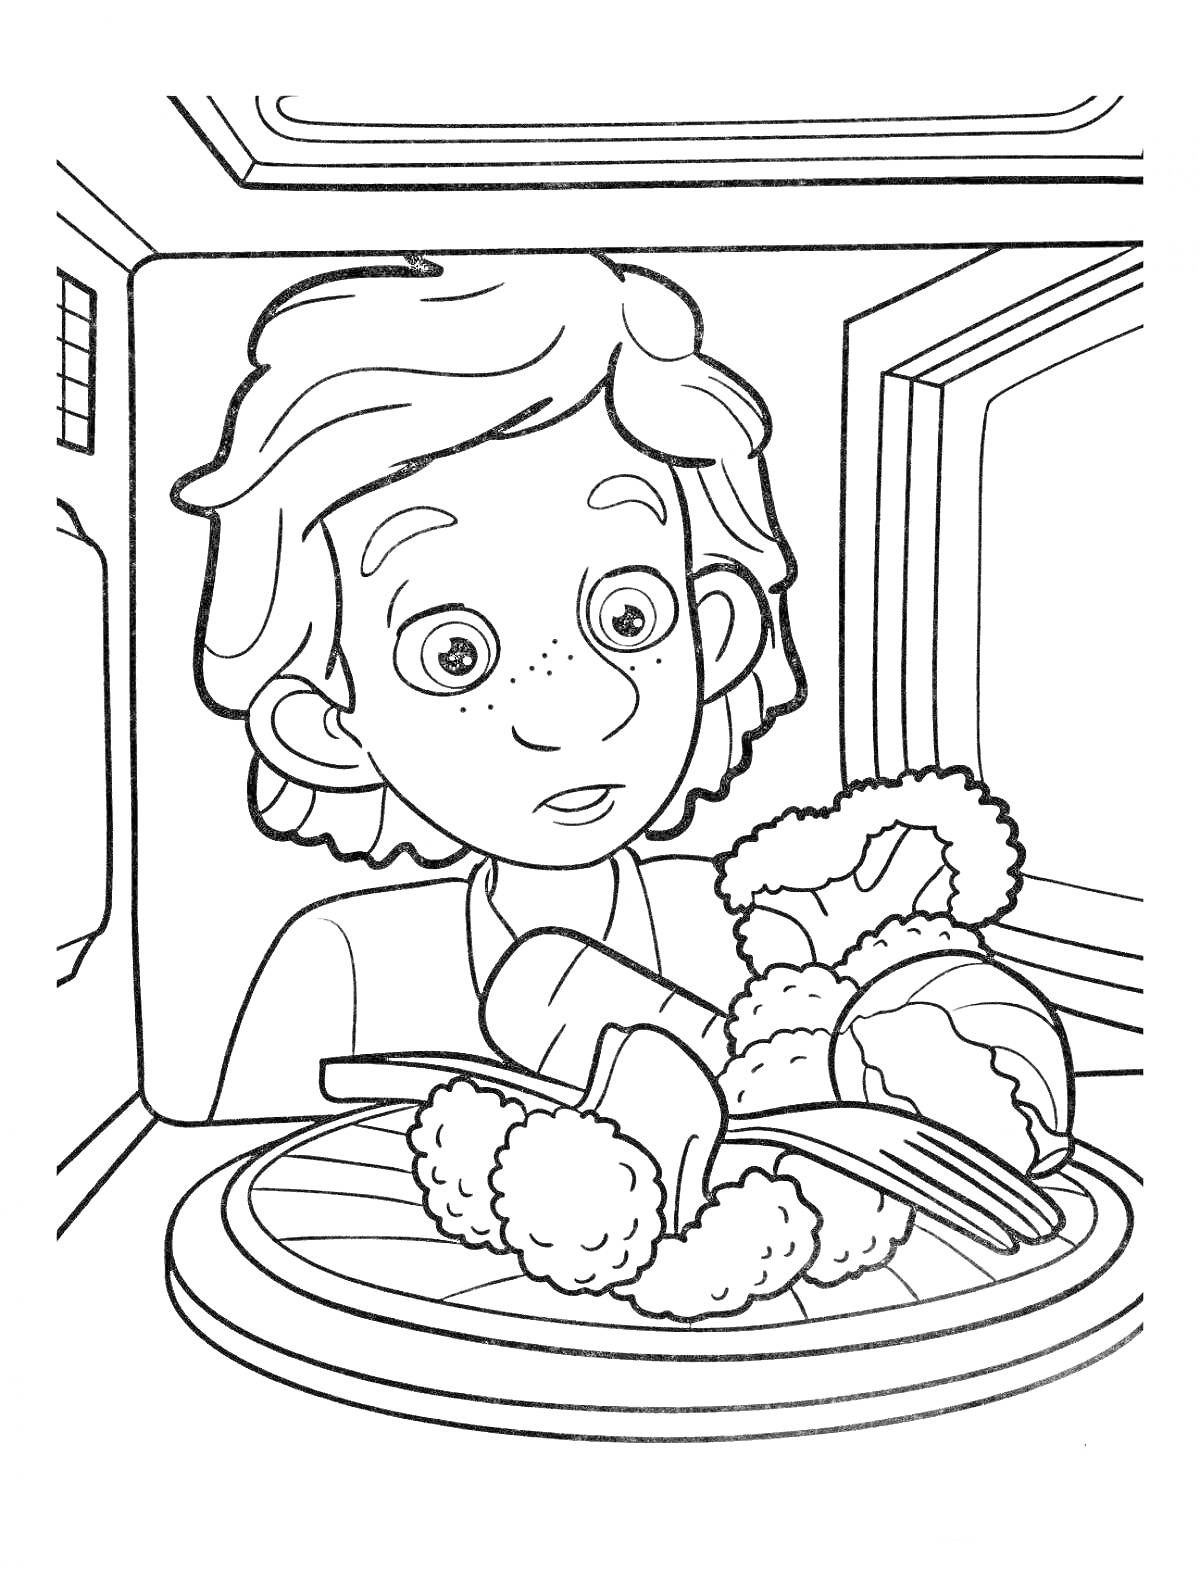 Раскраска Мальчик перед микроволновой печью, в которой находится тарелка с едой (шашлыки, и другие блюда).